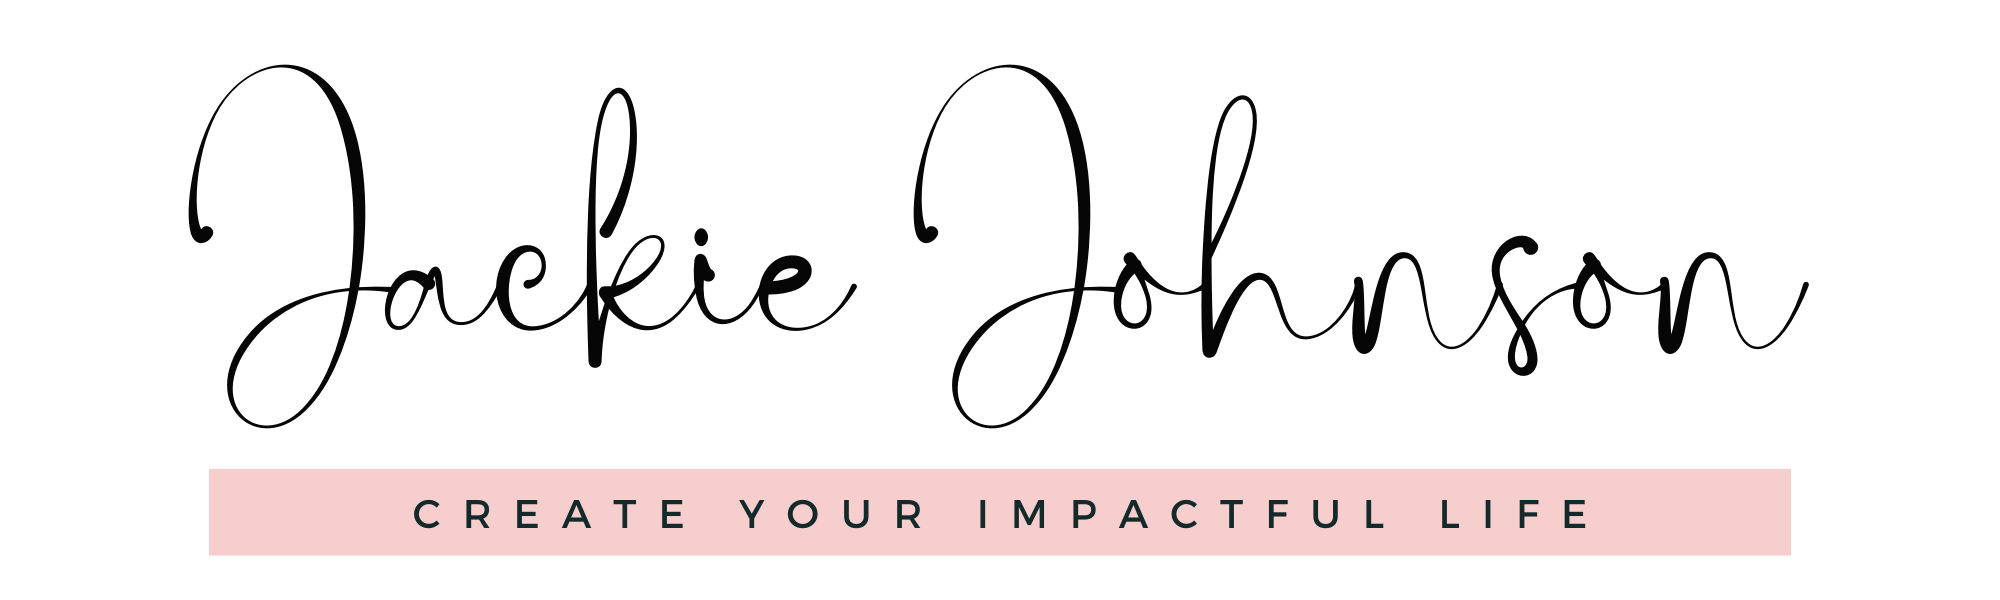 Freelance Impact logo